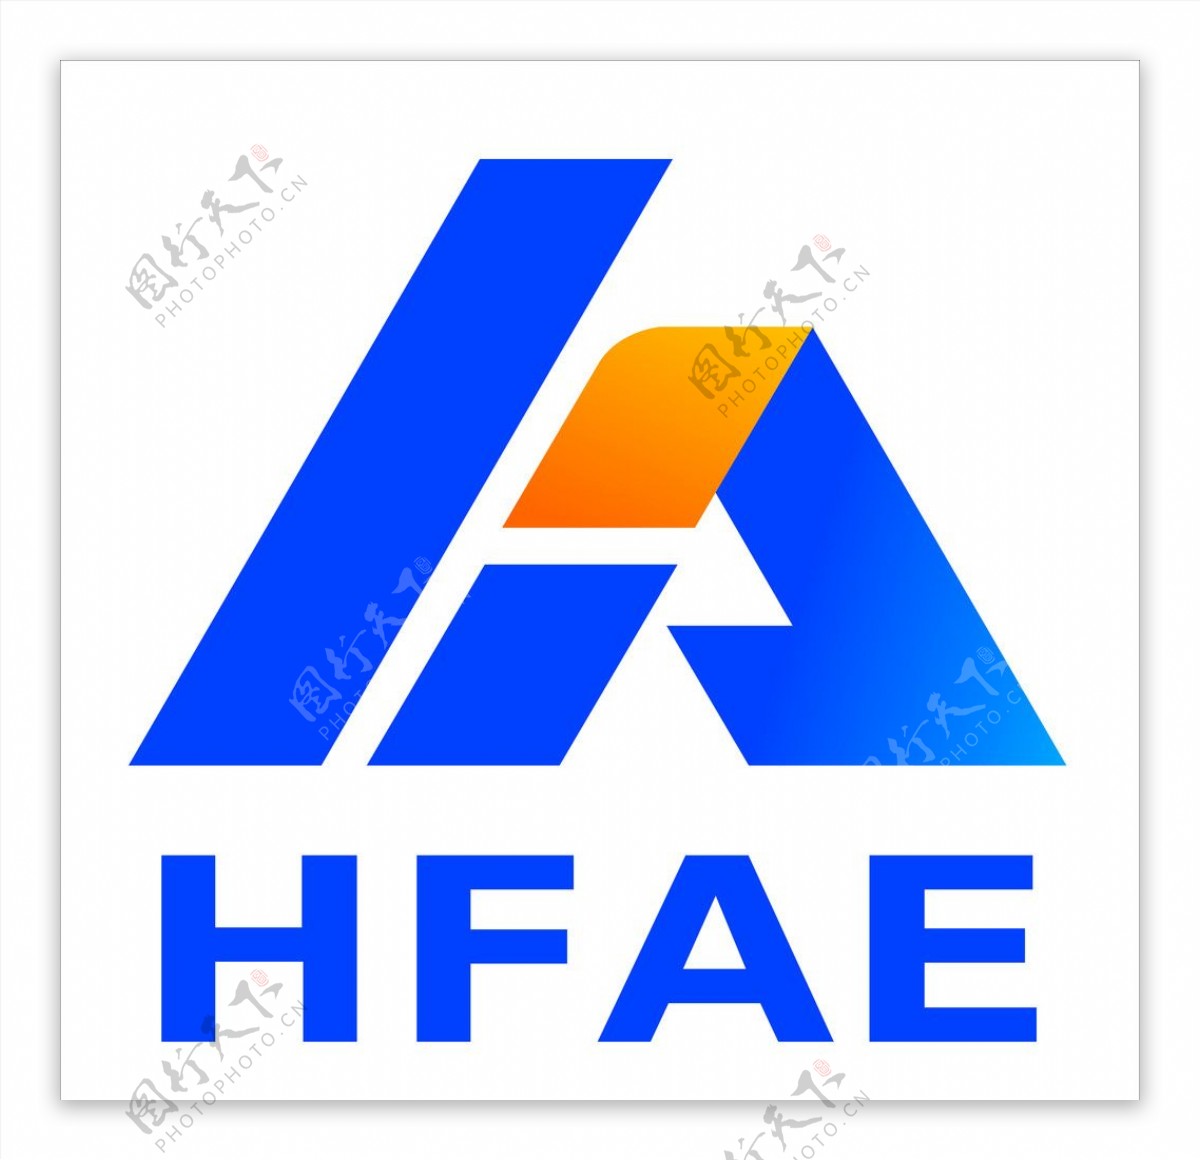 海南建筑工程公司logo图片